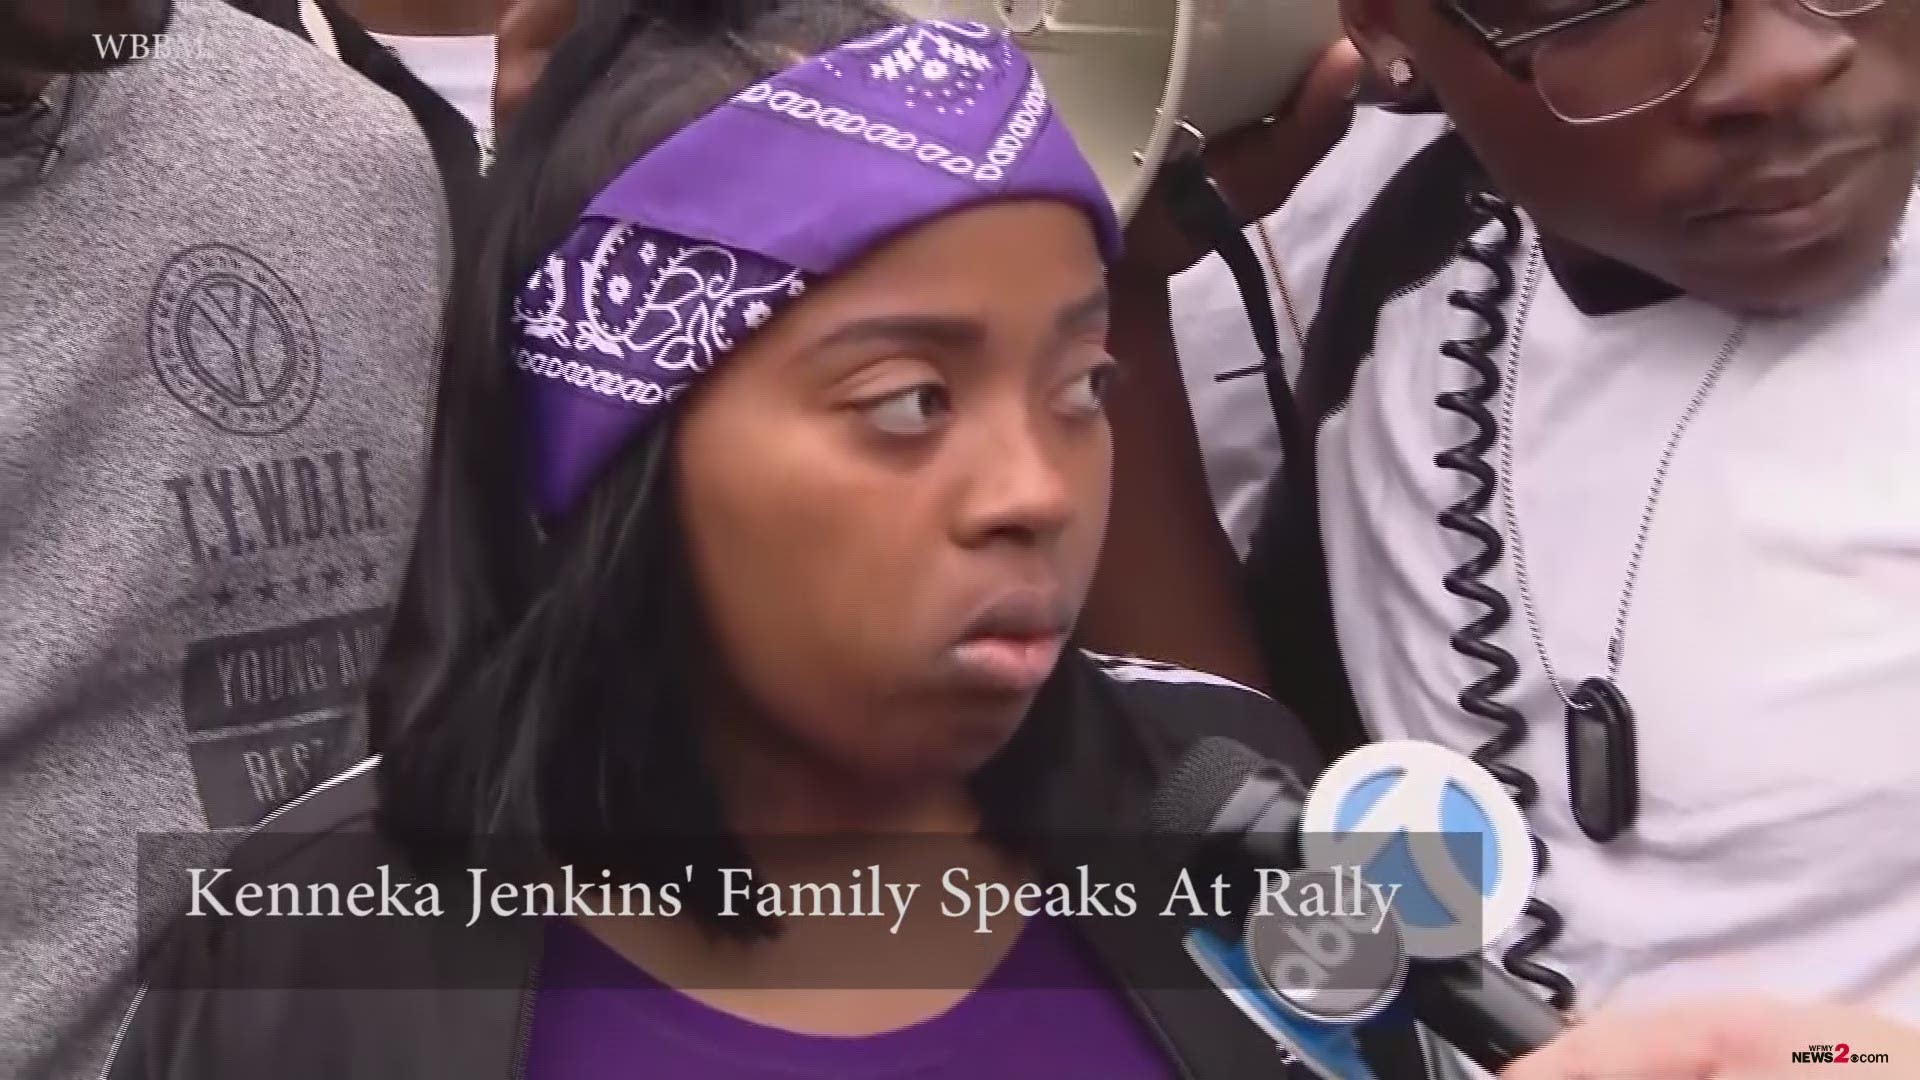 Kenneka Jenkins' Family Wants Answers